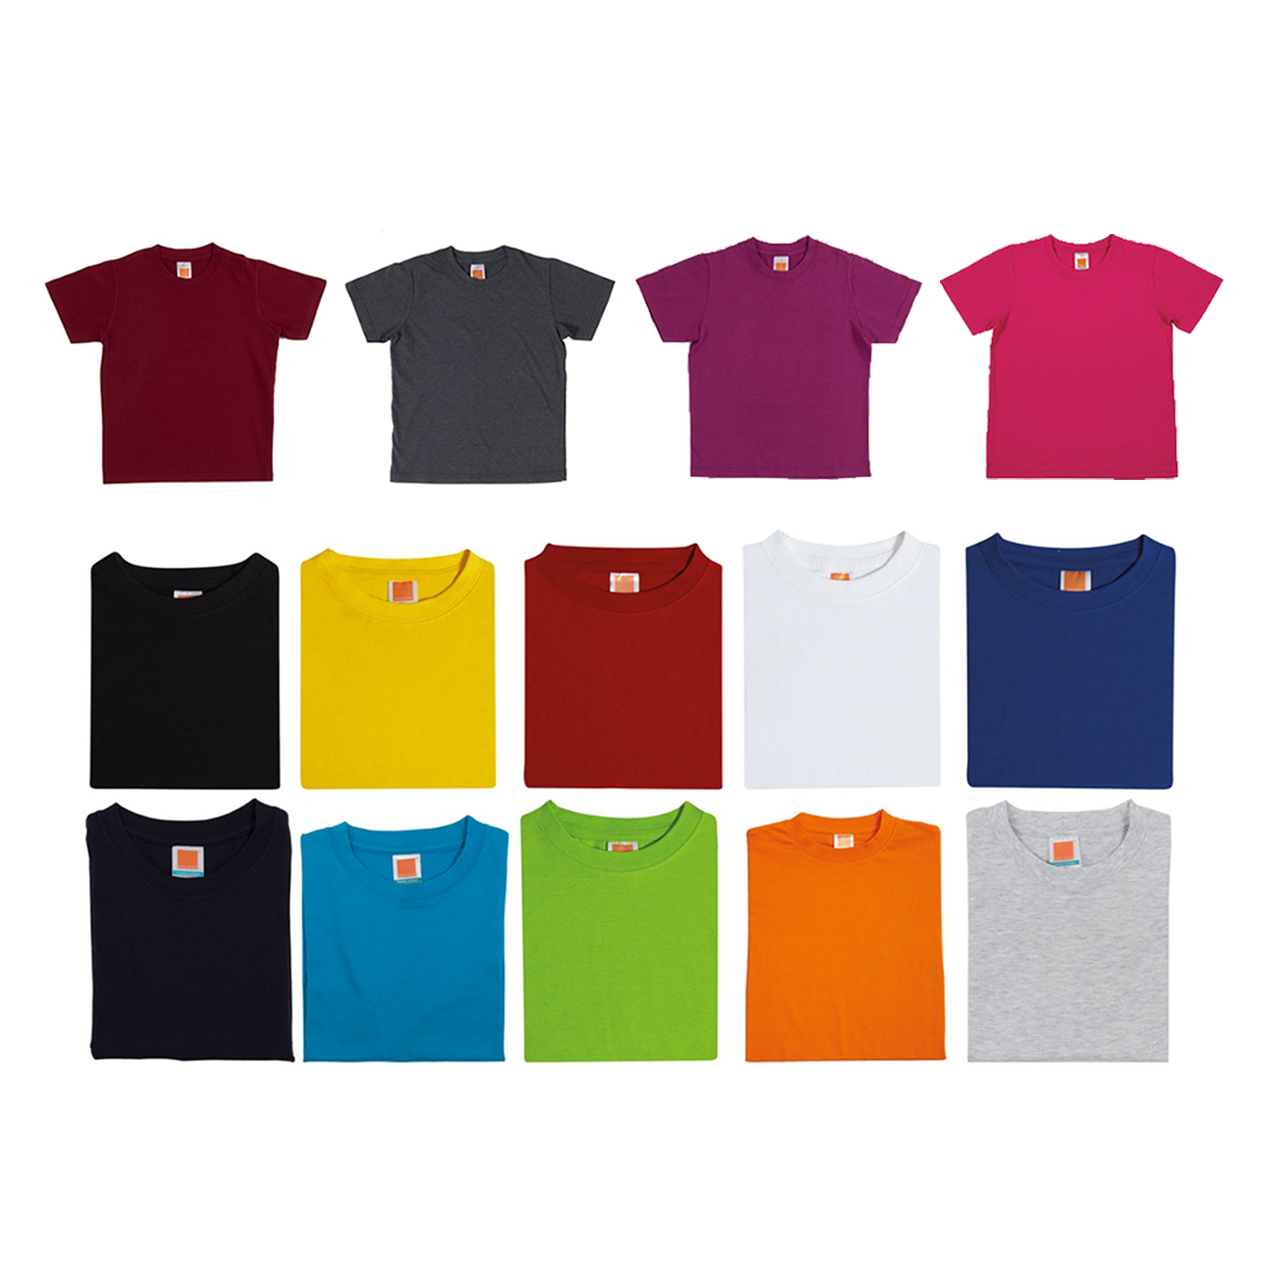 Wholesale Plain Toddler T-Shirts - Premium 100% Cotton